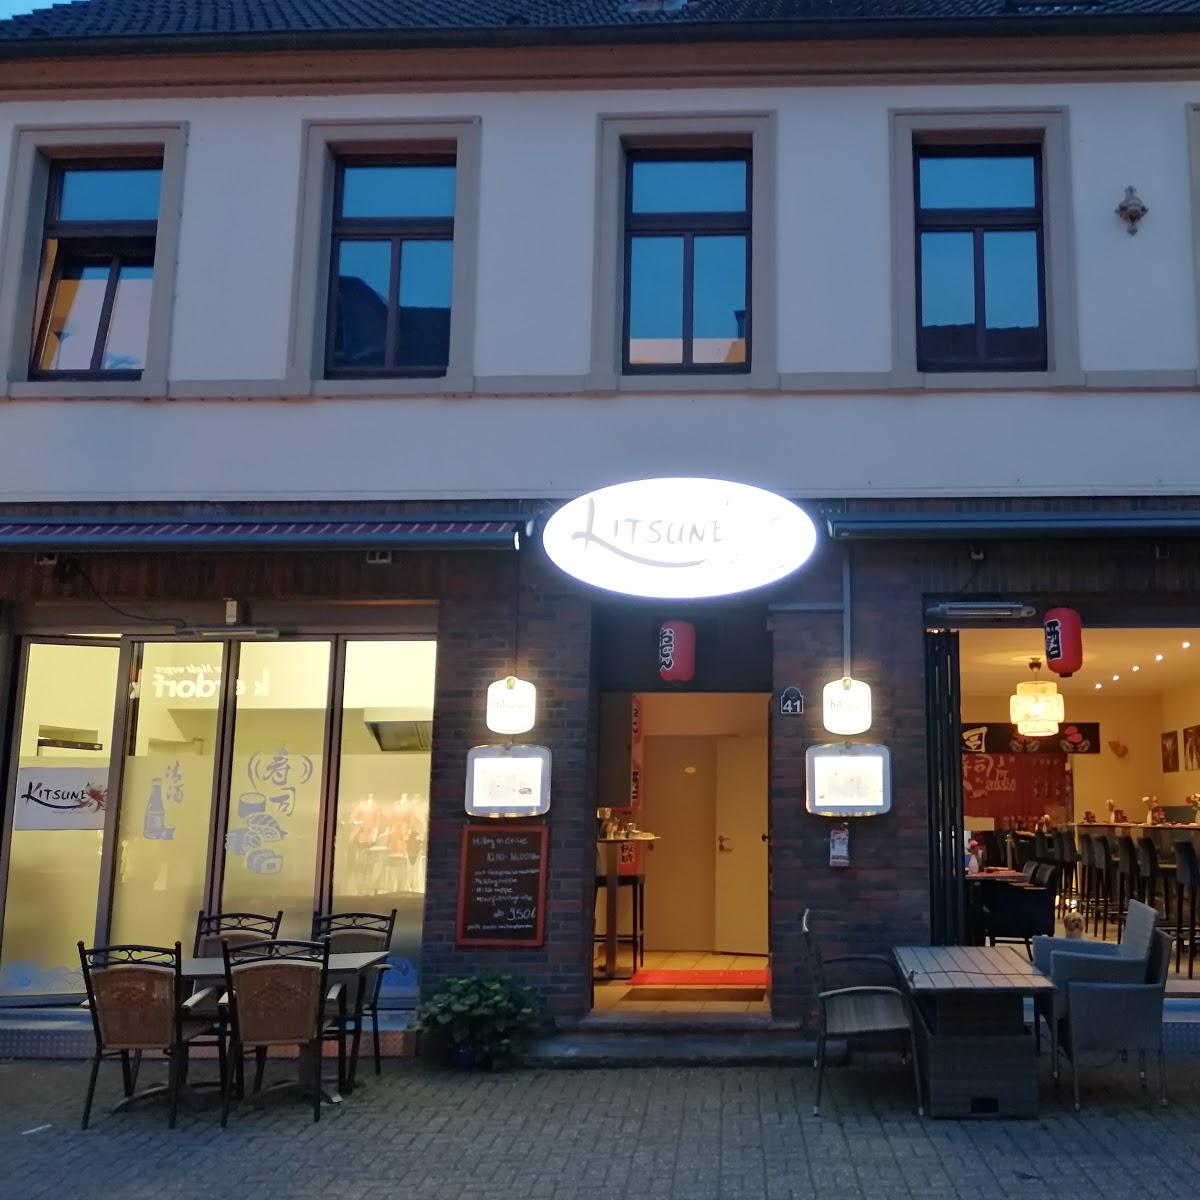 Restaurant "Restaurant Kitsune" in  Ruhr